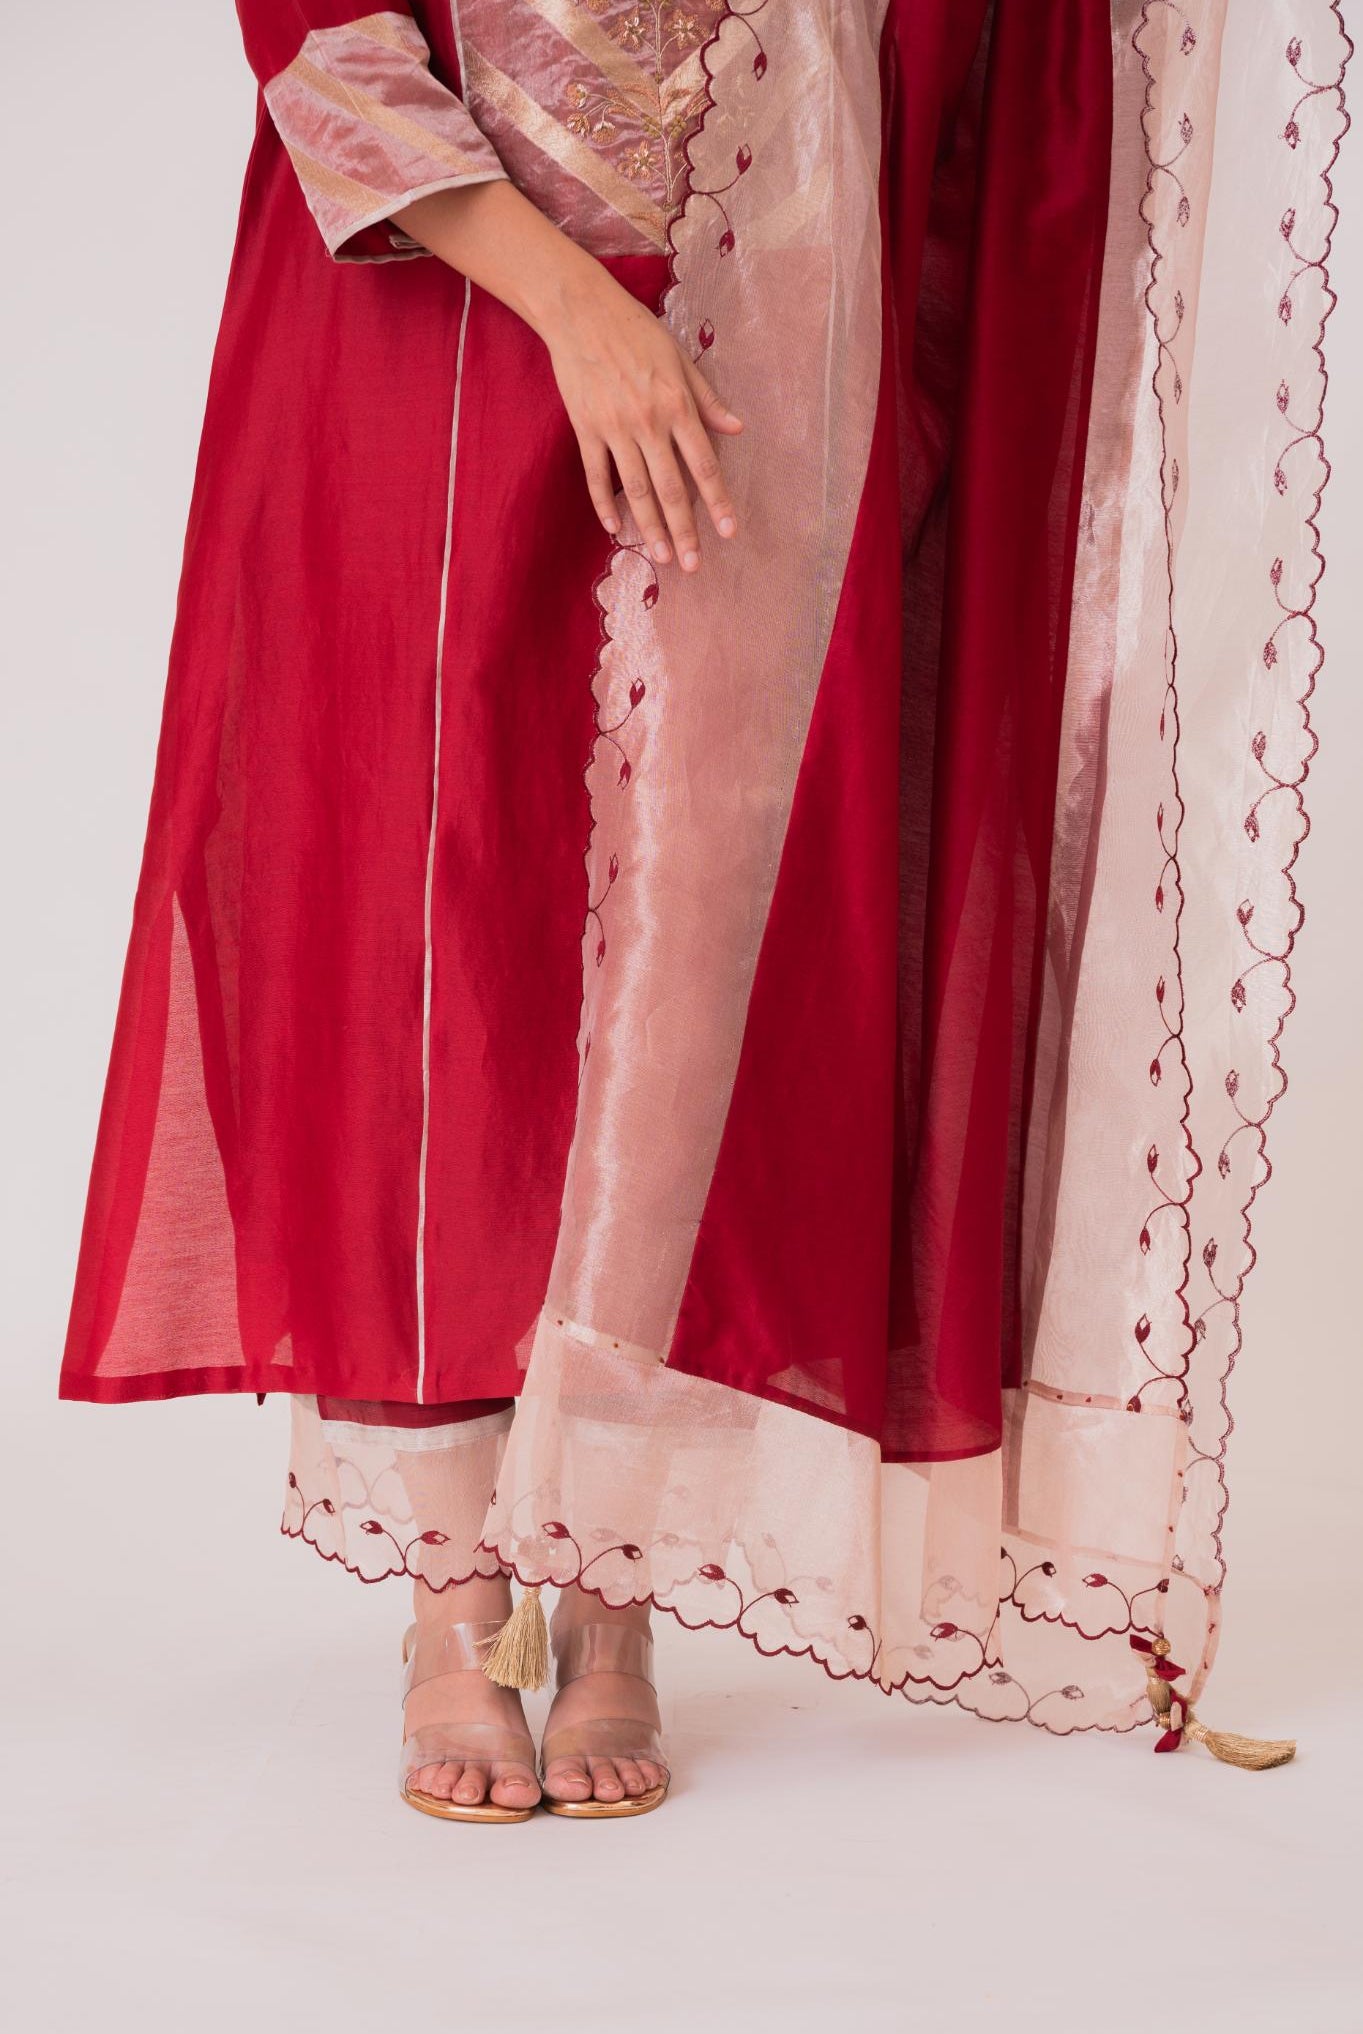 Banarasi Yoke Kurta Set - Crimson Red - CiceroniKurta Set, Festive wearBhavik Shah